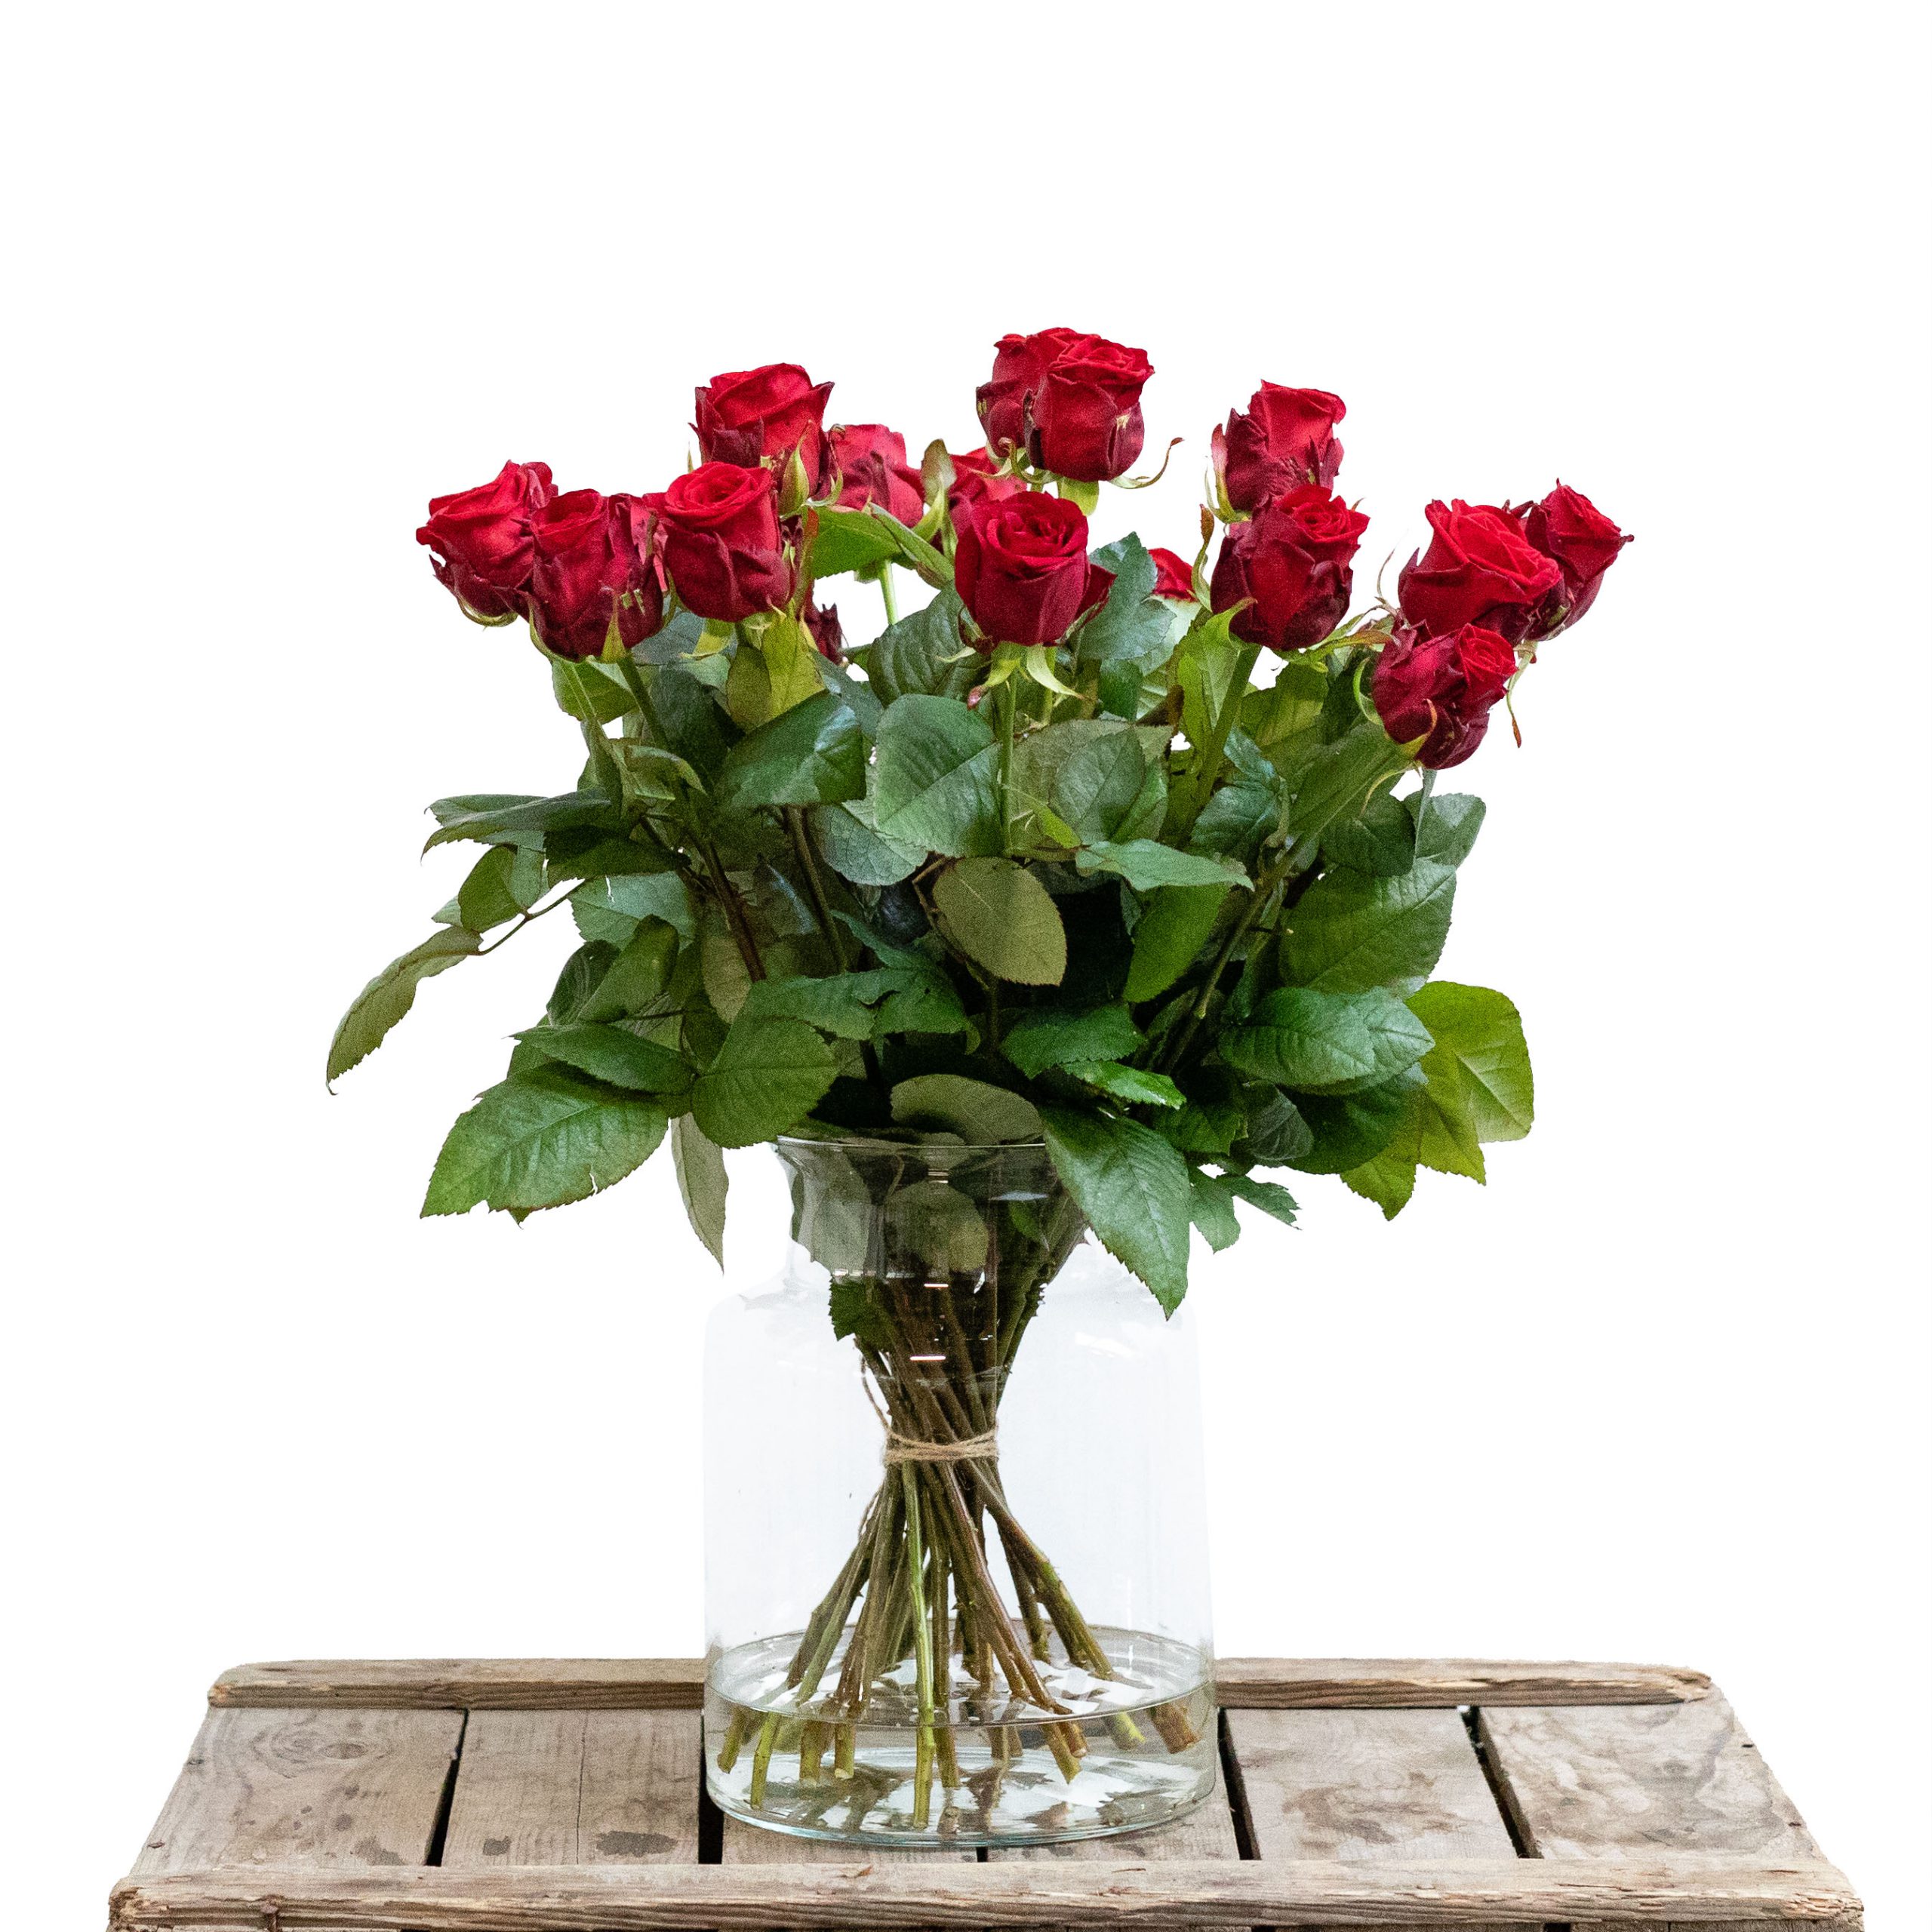 Okkernoot Proportioneel Rang Rode rozen bestellen | Stel uw eigen boeket samen!